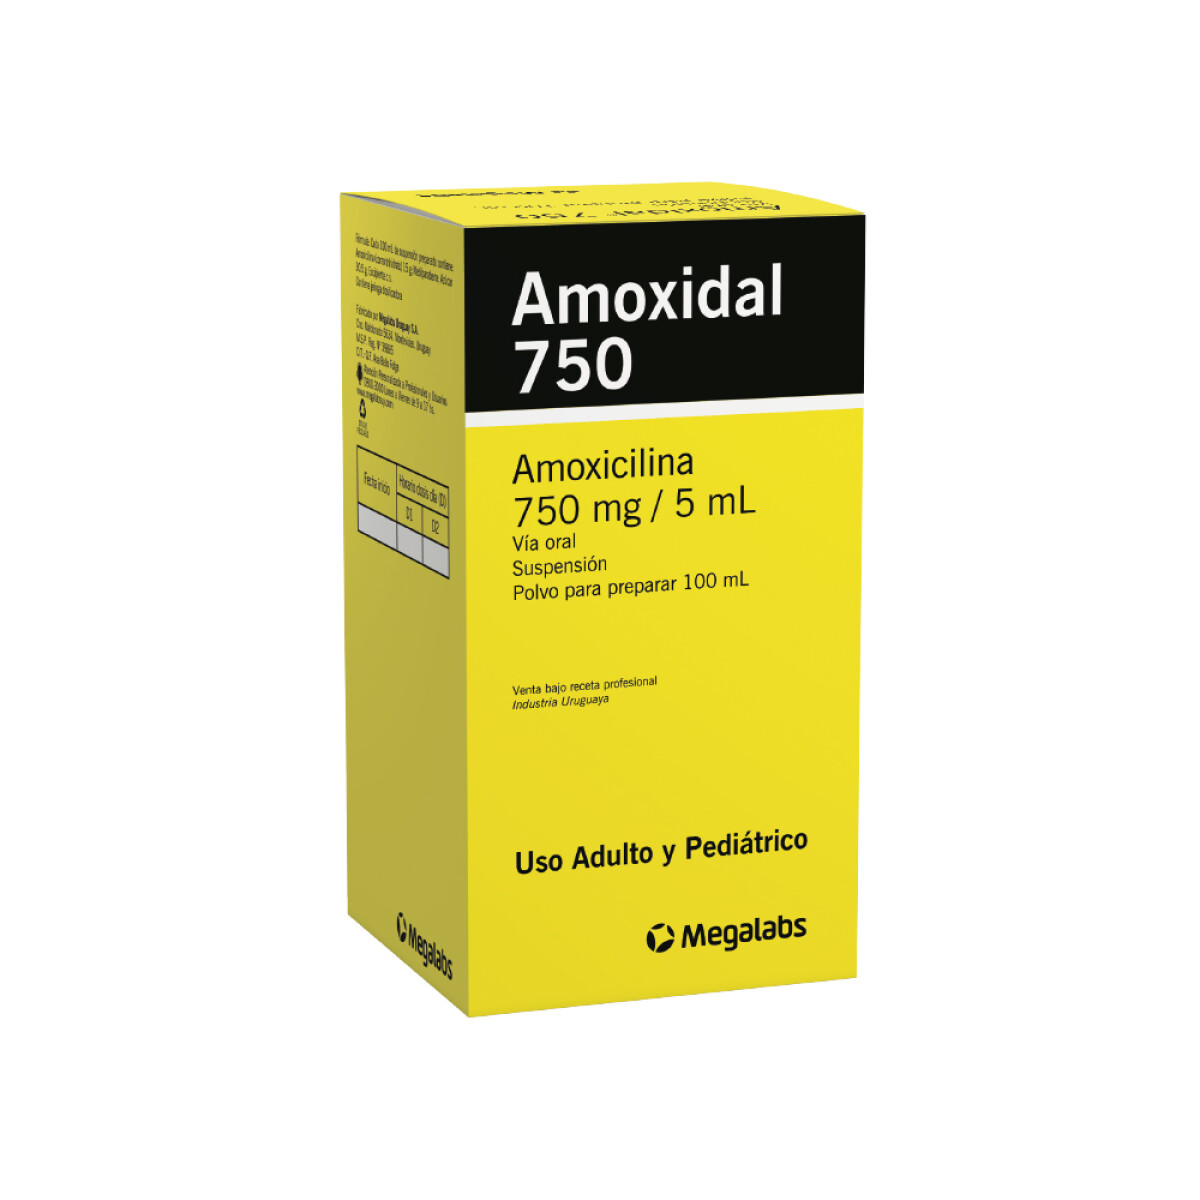 Amoxidal Susp. 750 Mg. 100 Ml. 